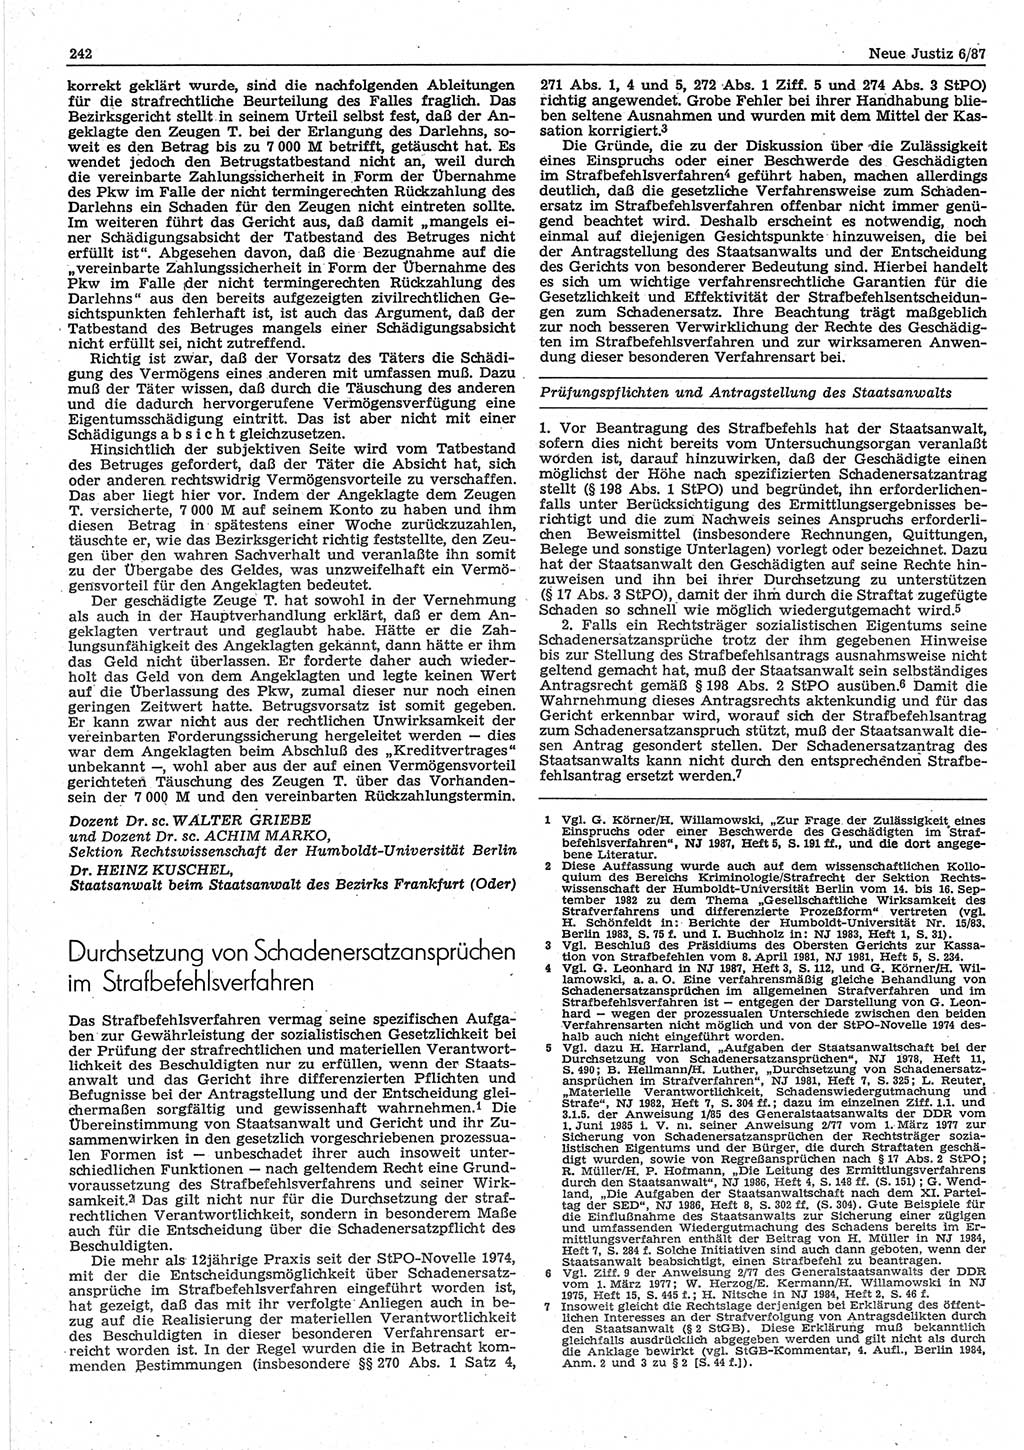 Neue Justiz (NJ), Zeitschrift für sozialistisches Recht und Gesetzlichkeit [Deutsche Demokratische Republik (DDR)], 41. Jahrgang 1987, Seite 242 (NJ DDR 1987, S. 242)